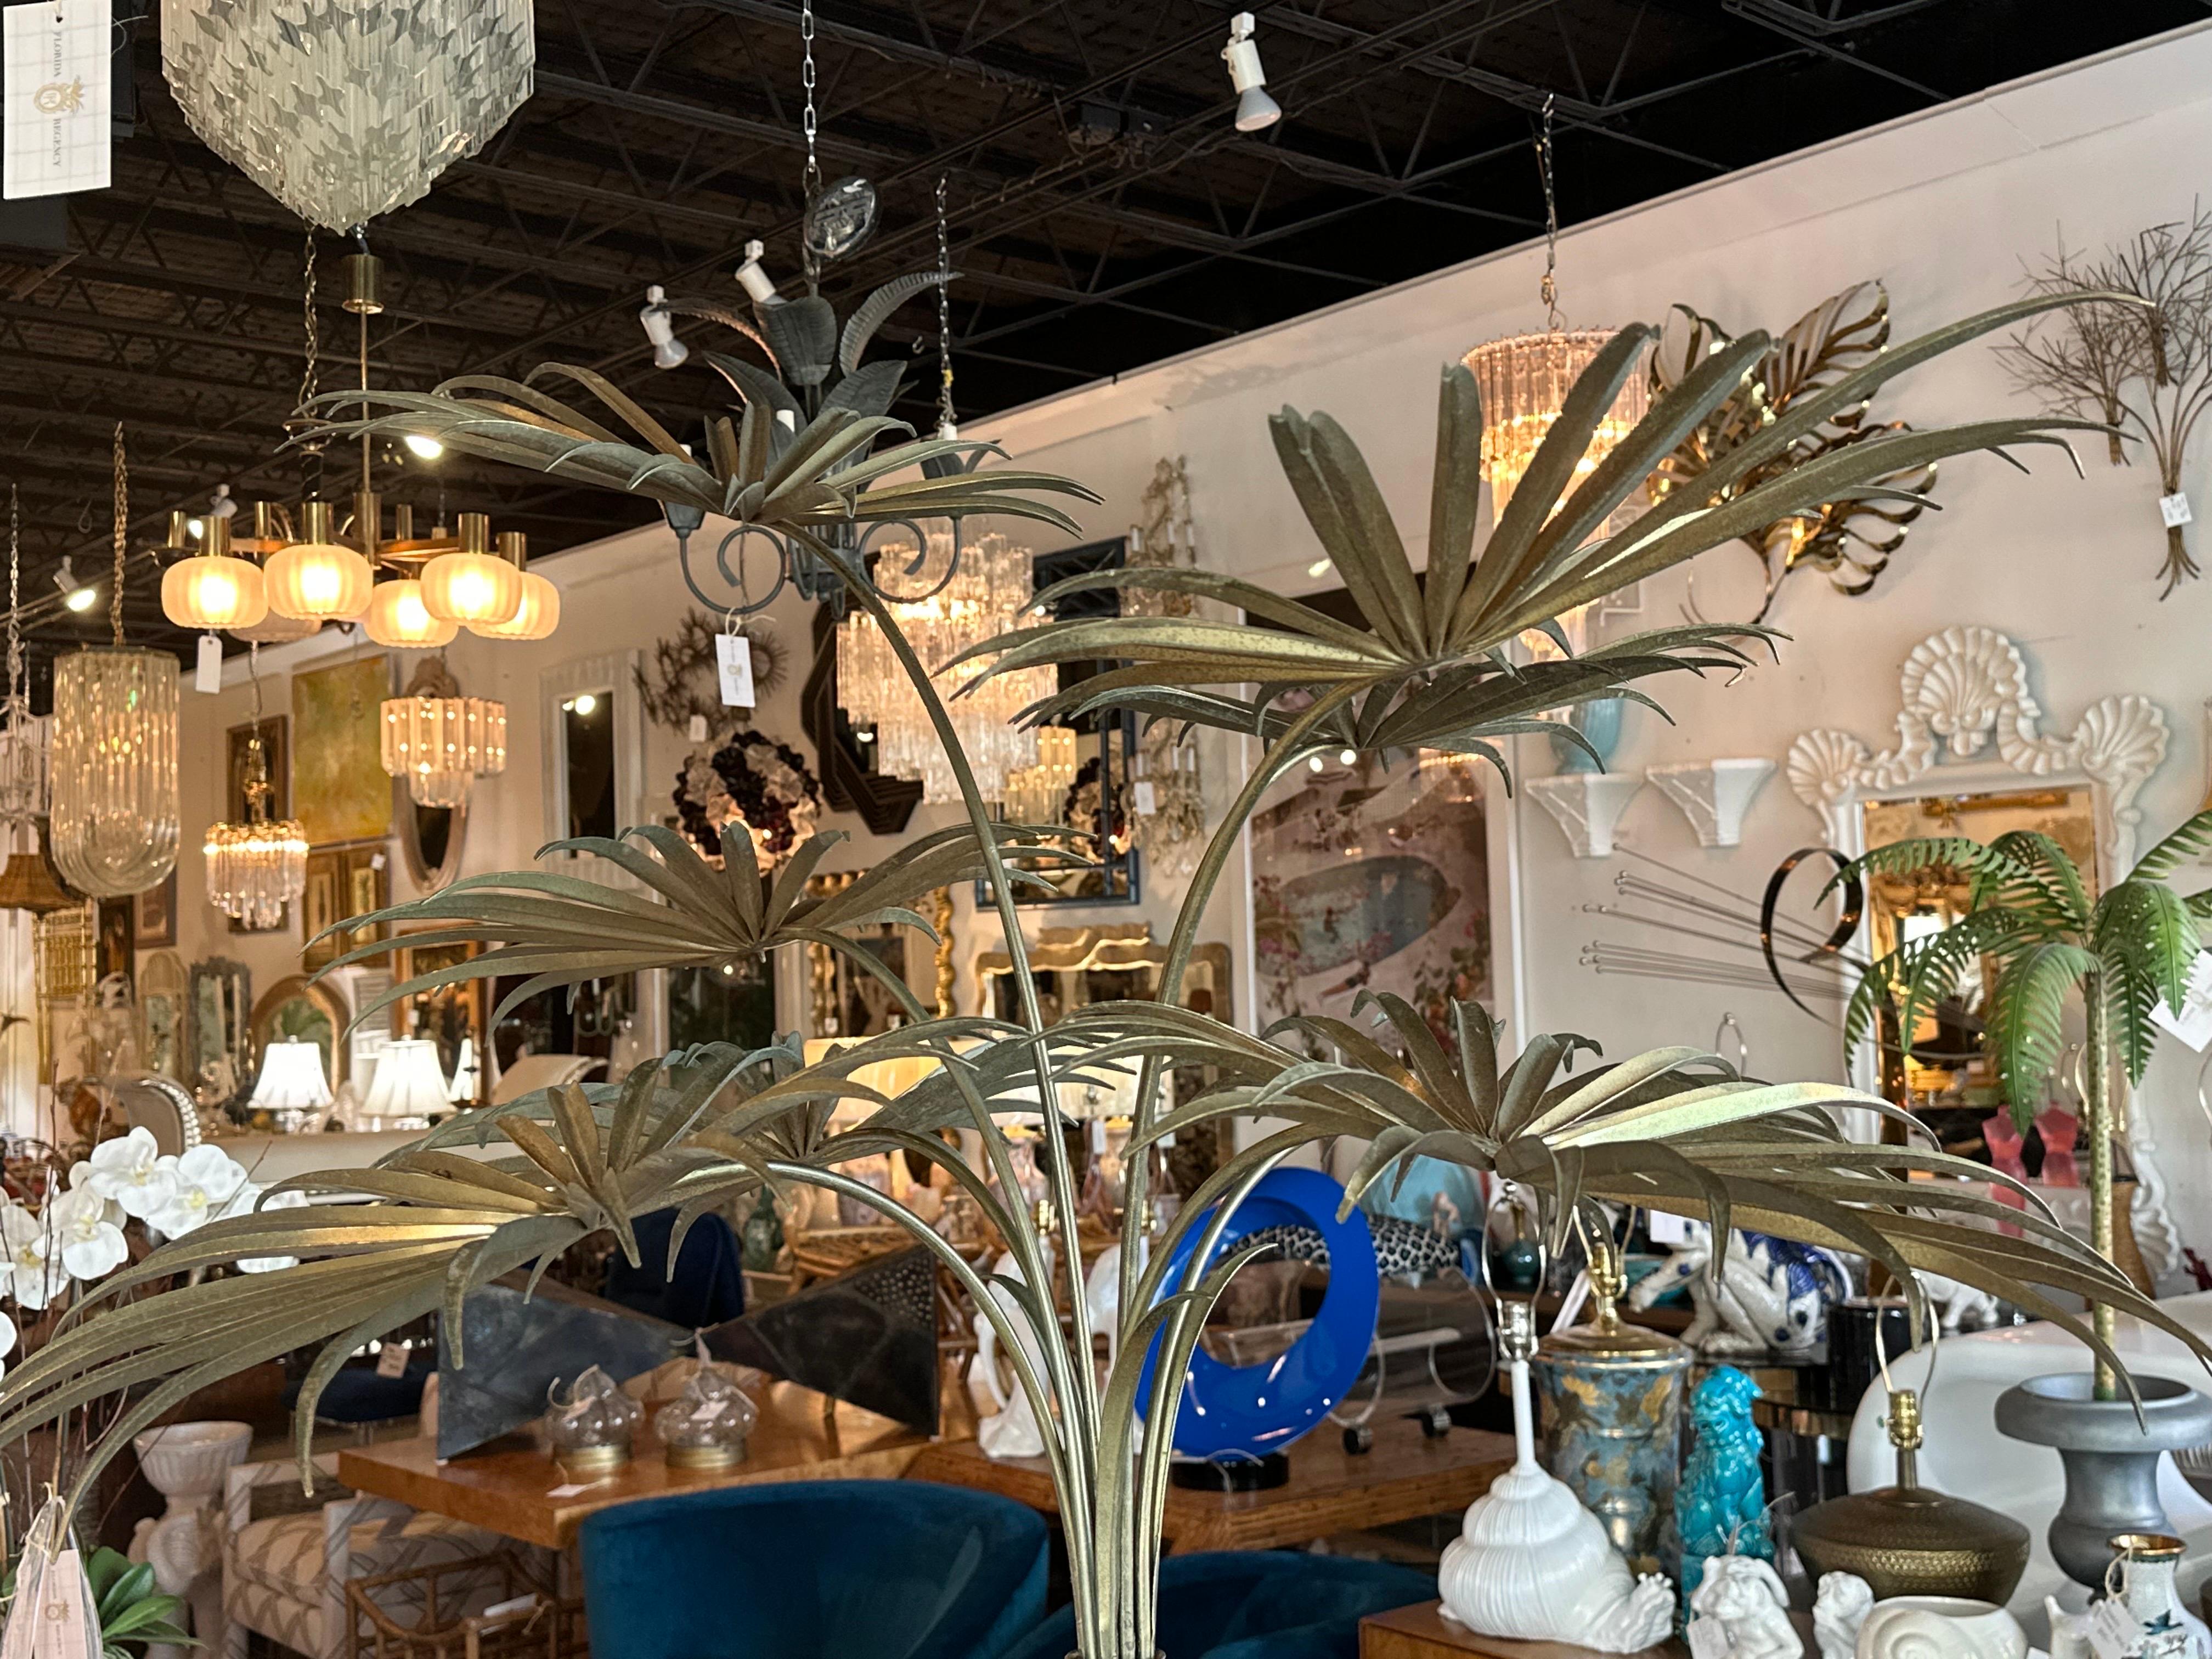 Lovely vintage métal or laiton tole palm tree statue pièce de décor. Fabriqué en Italie par Casa Bisque. Dimensions : 81 H x 42 D. Base de la jardinière : 16 x 16. Patine sur le placage en laiton doré. Veuillez me faire savoir si vous souhaitez un